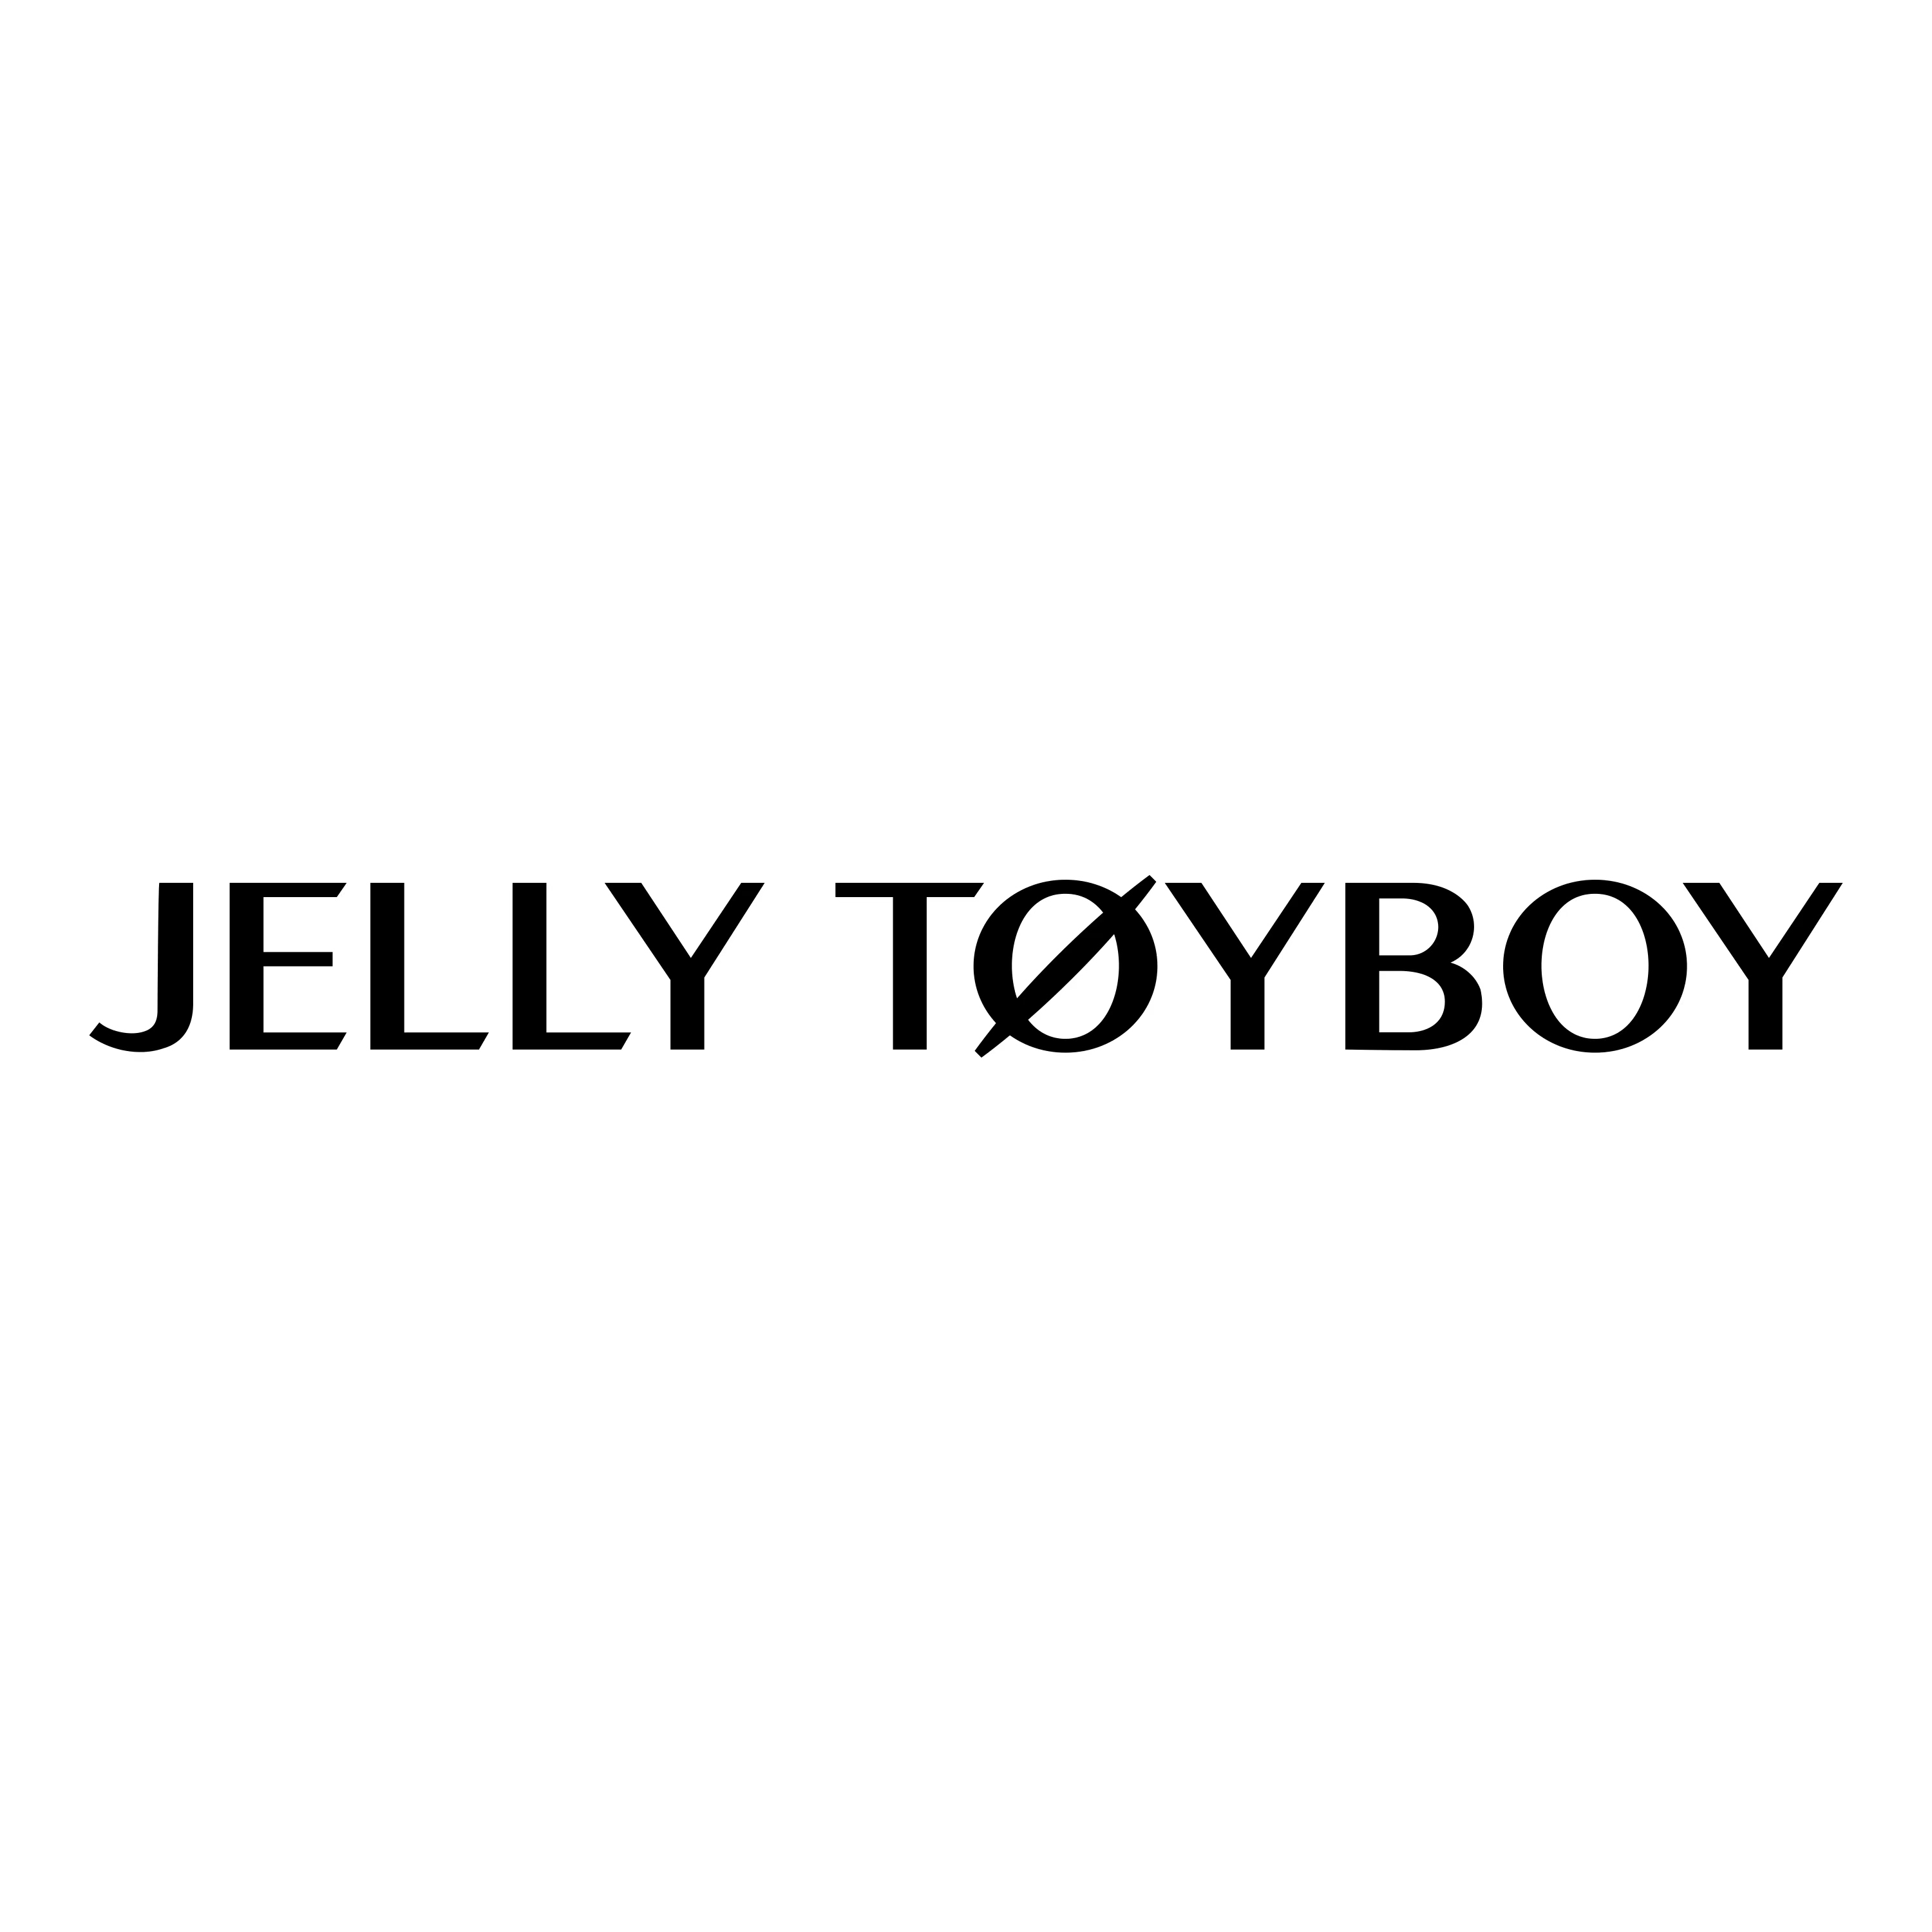 jellytoyboy旗舰店